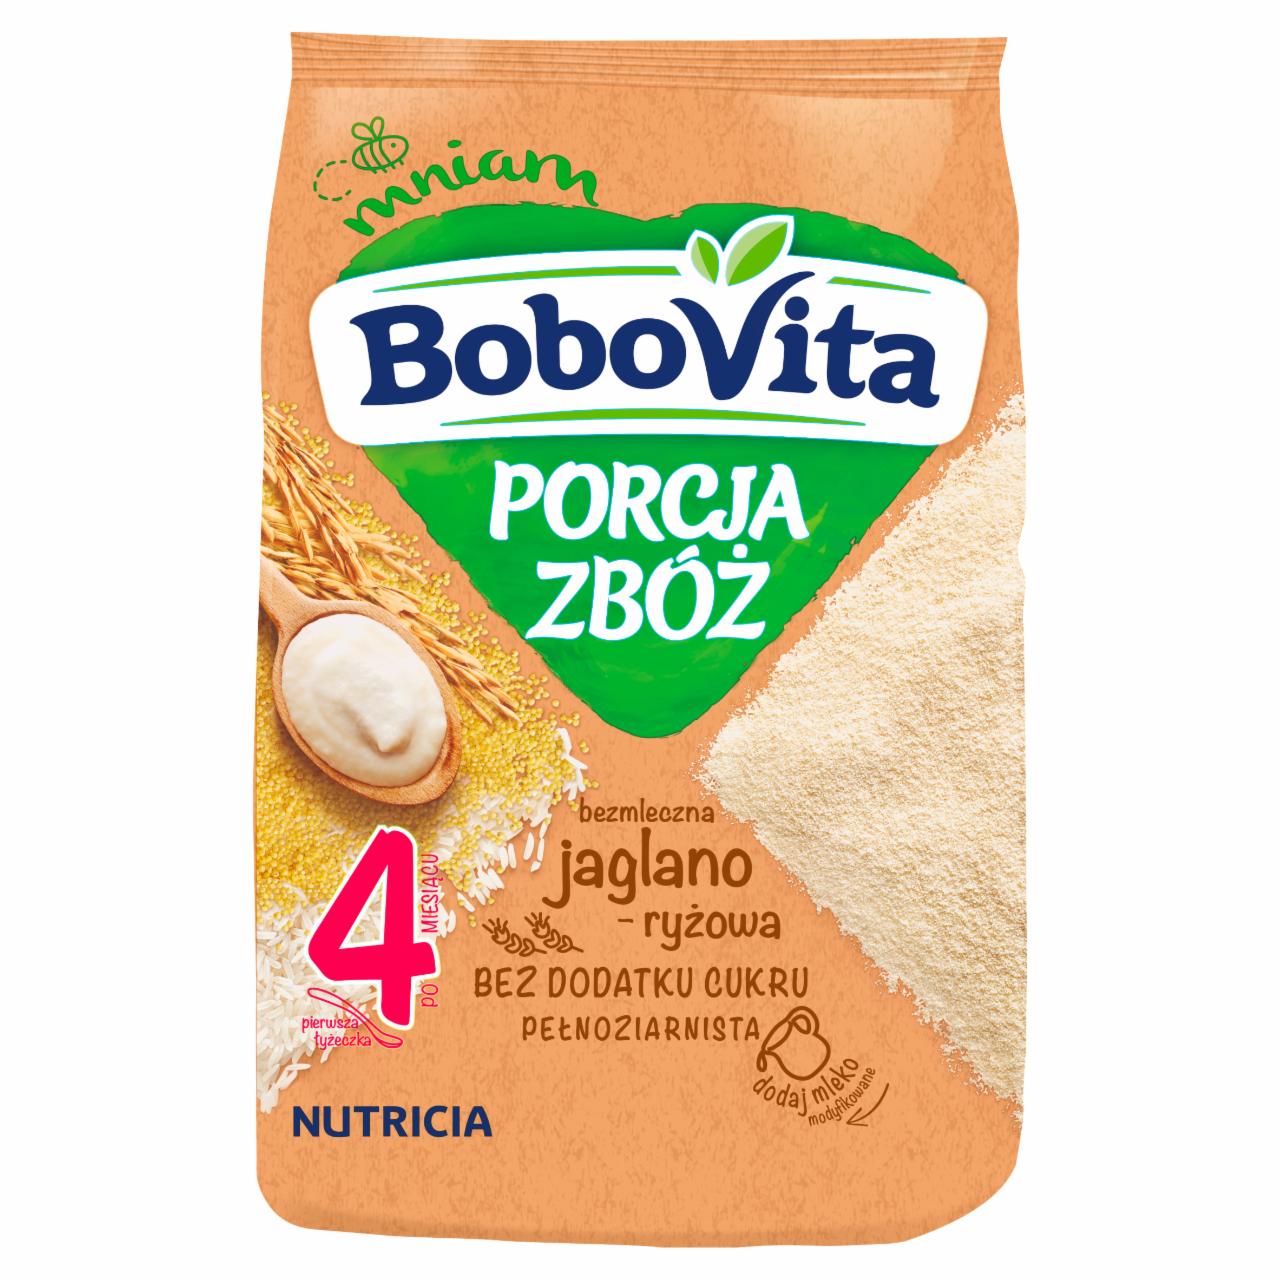 Zdjęcia - BoboVita Porcja Zbóż Kaszka bezmleczna jaglano-ryżowa po 4 miesiącu 170 g